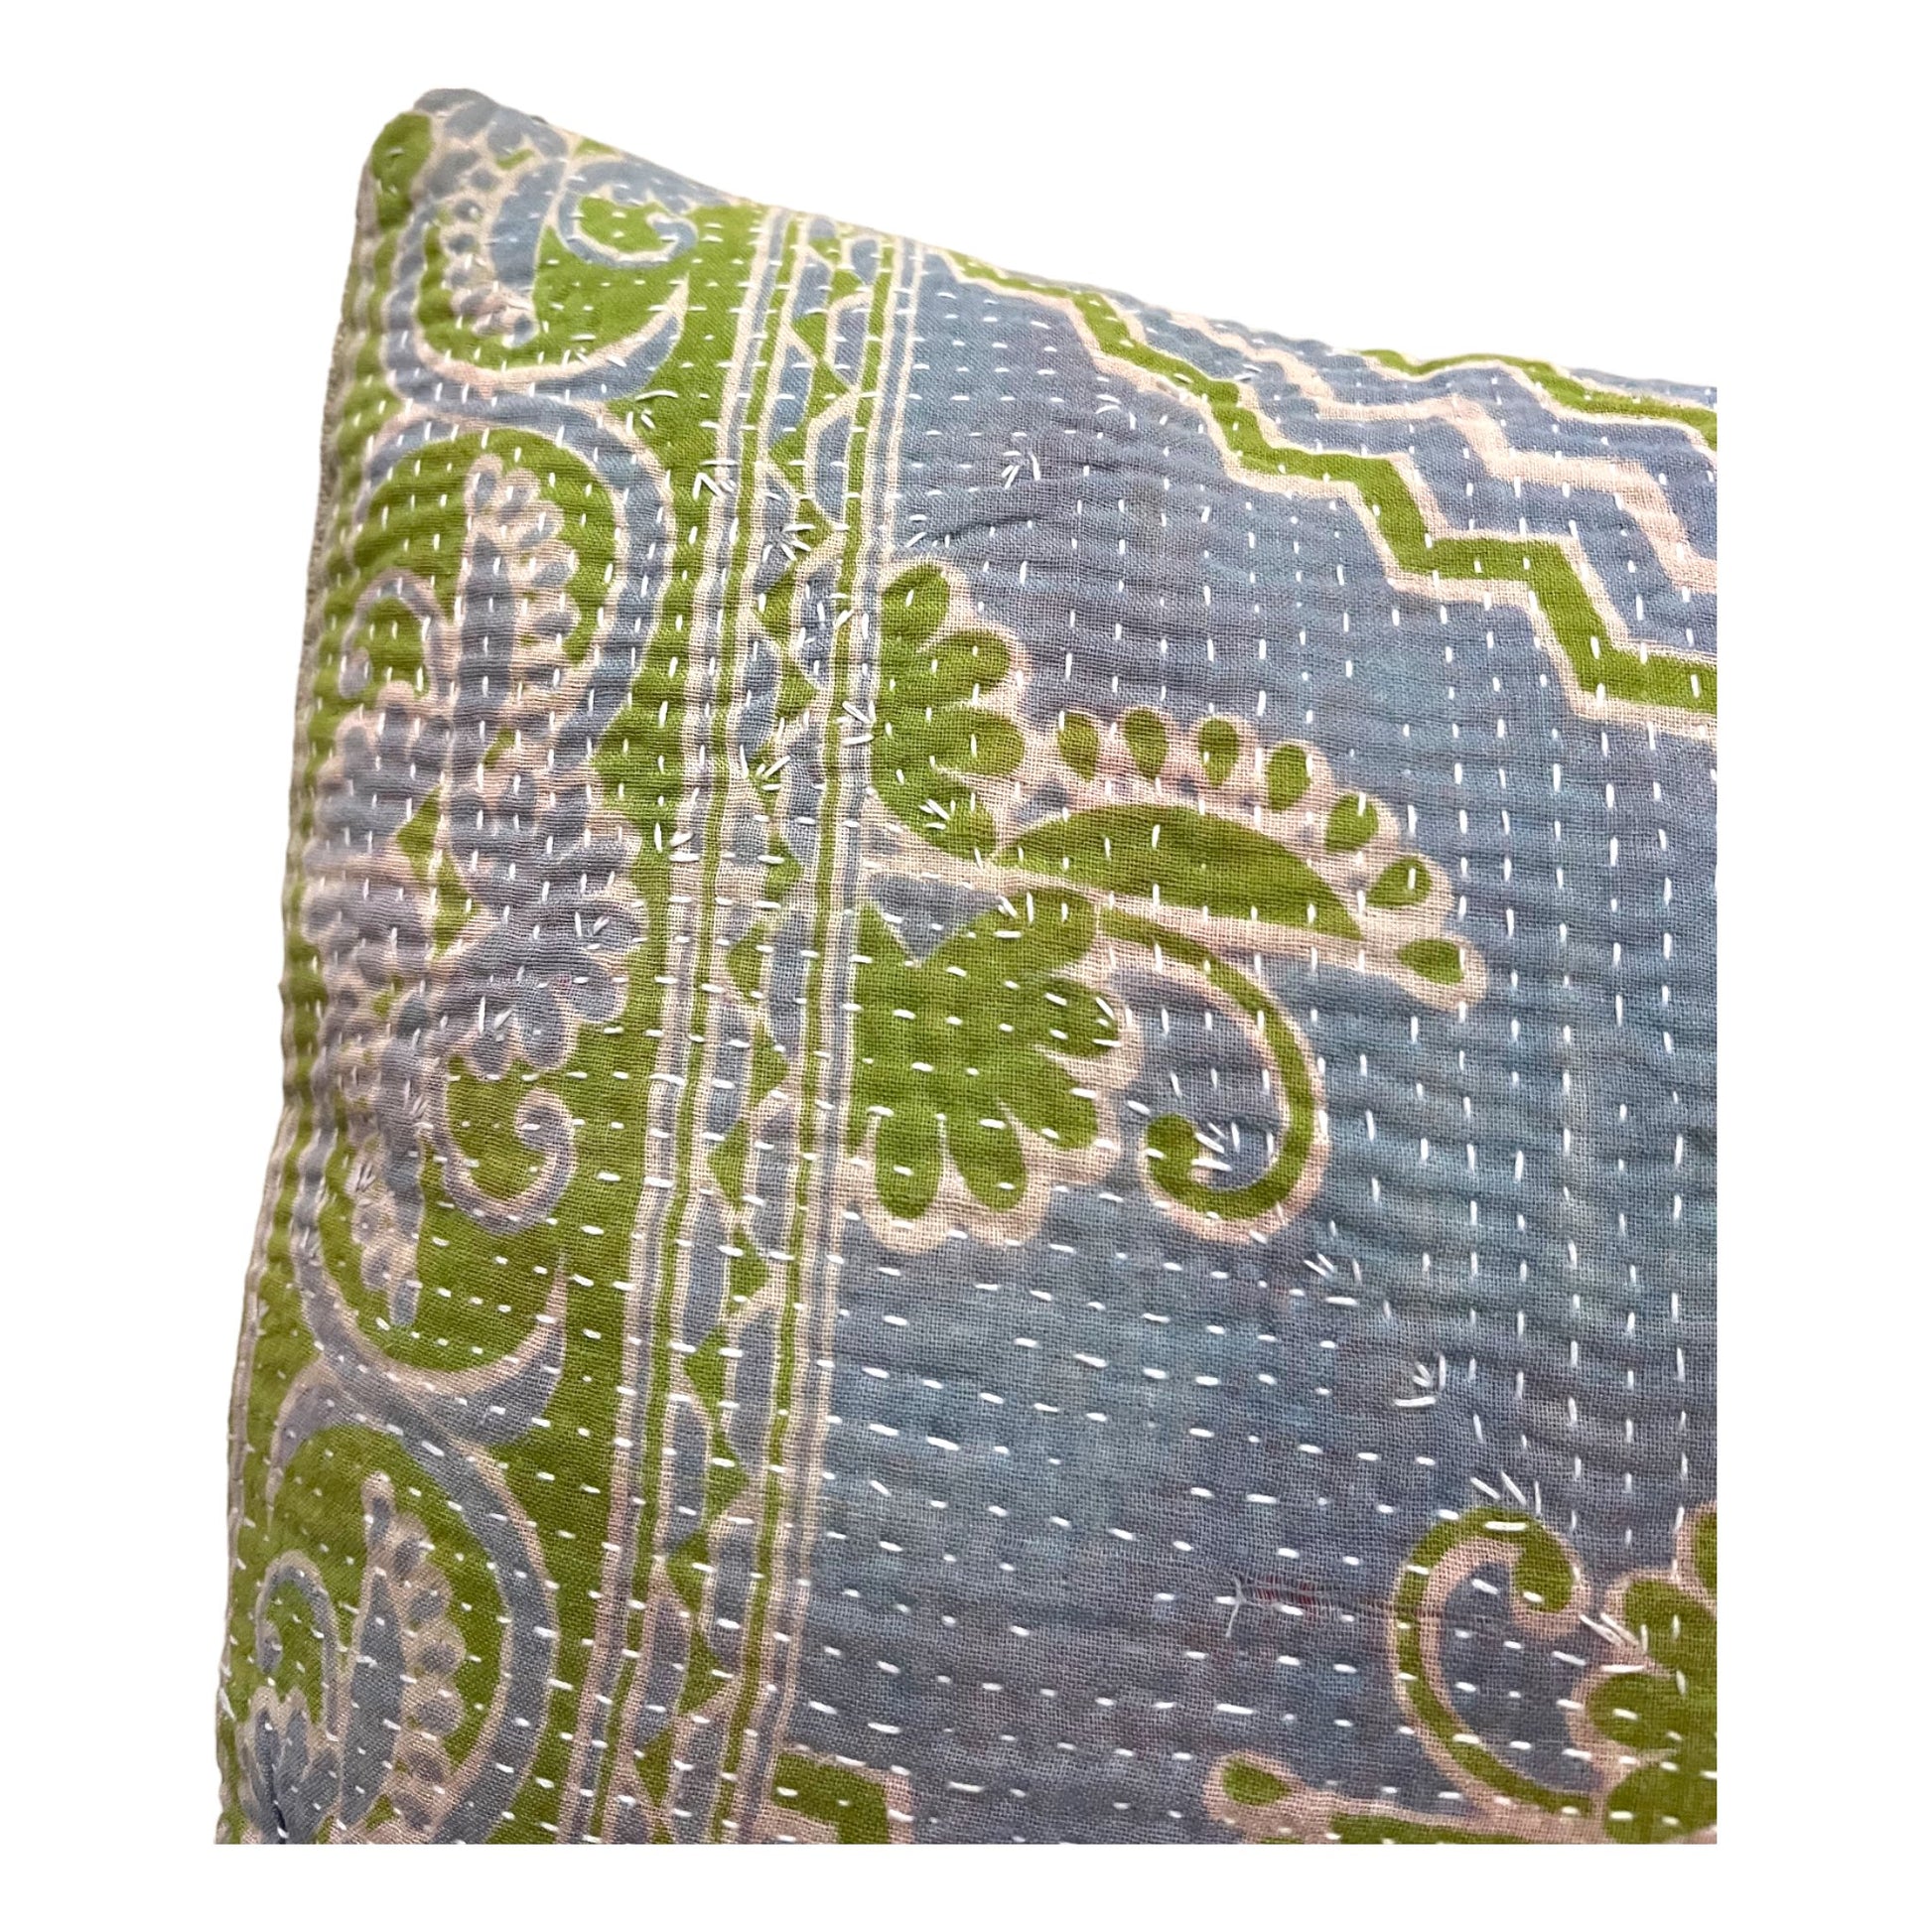 Green and blue kantha cushion closeup